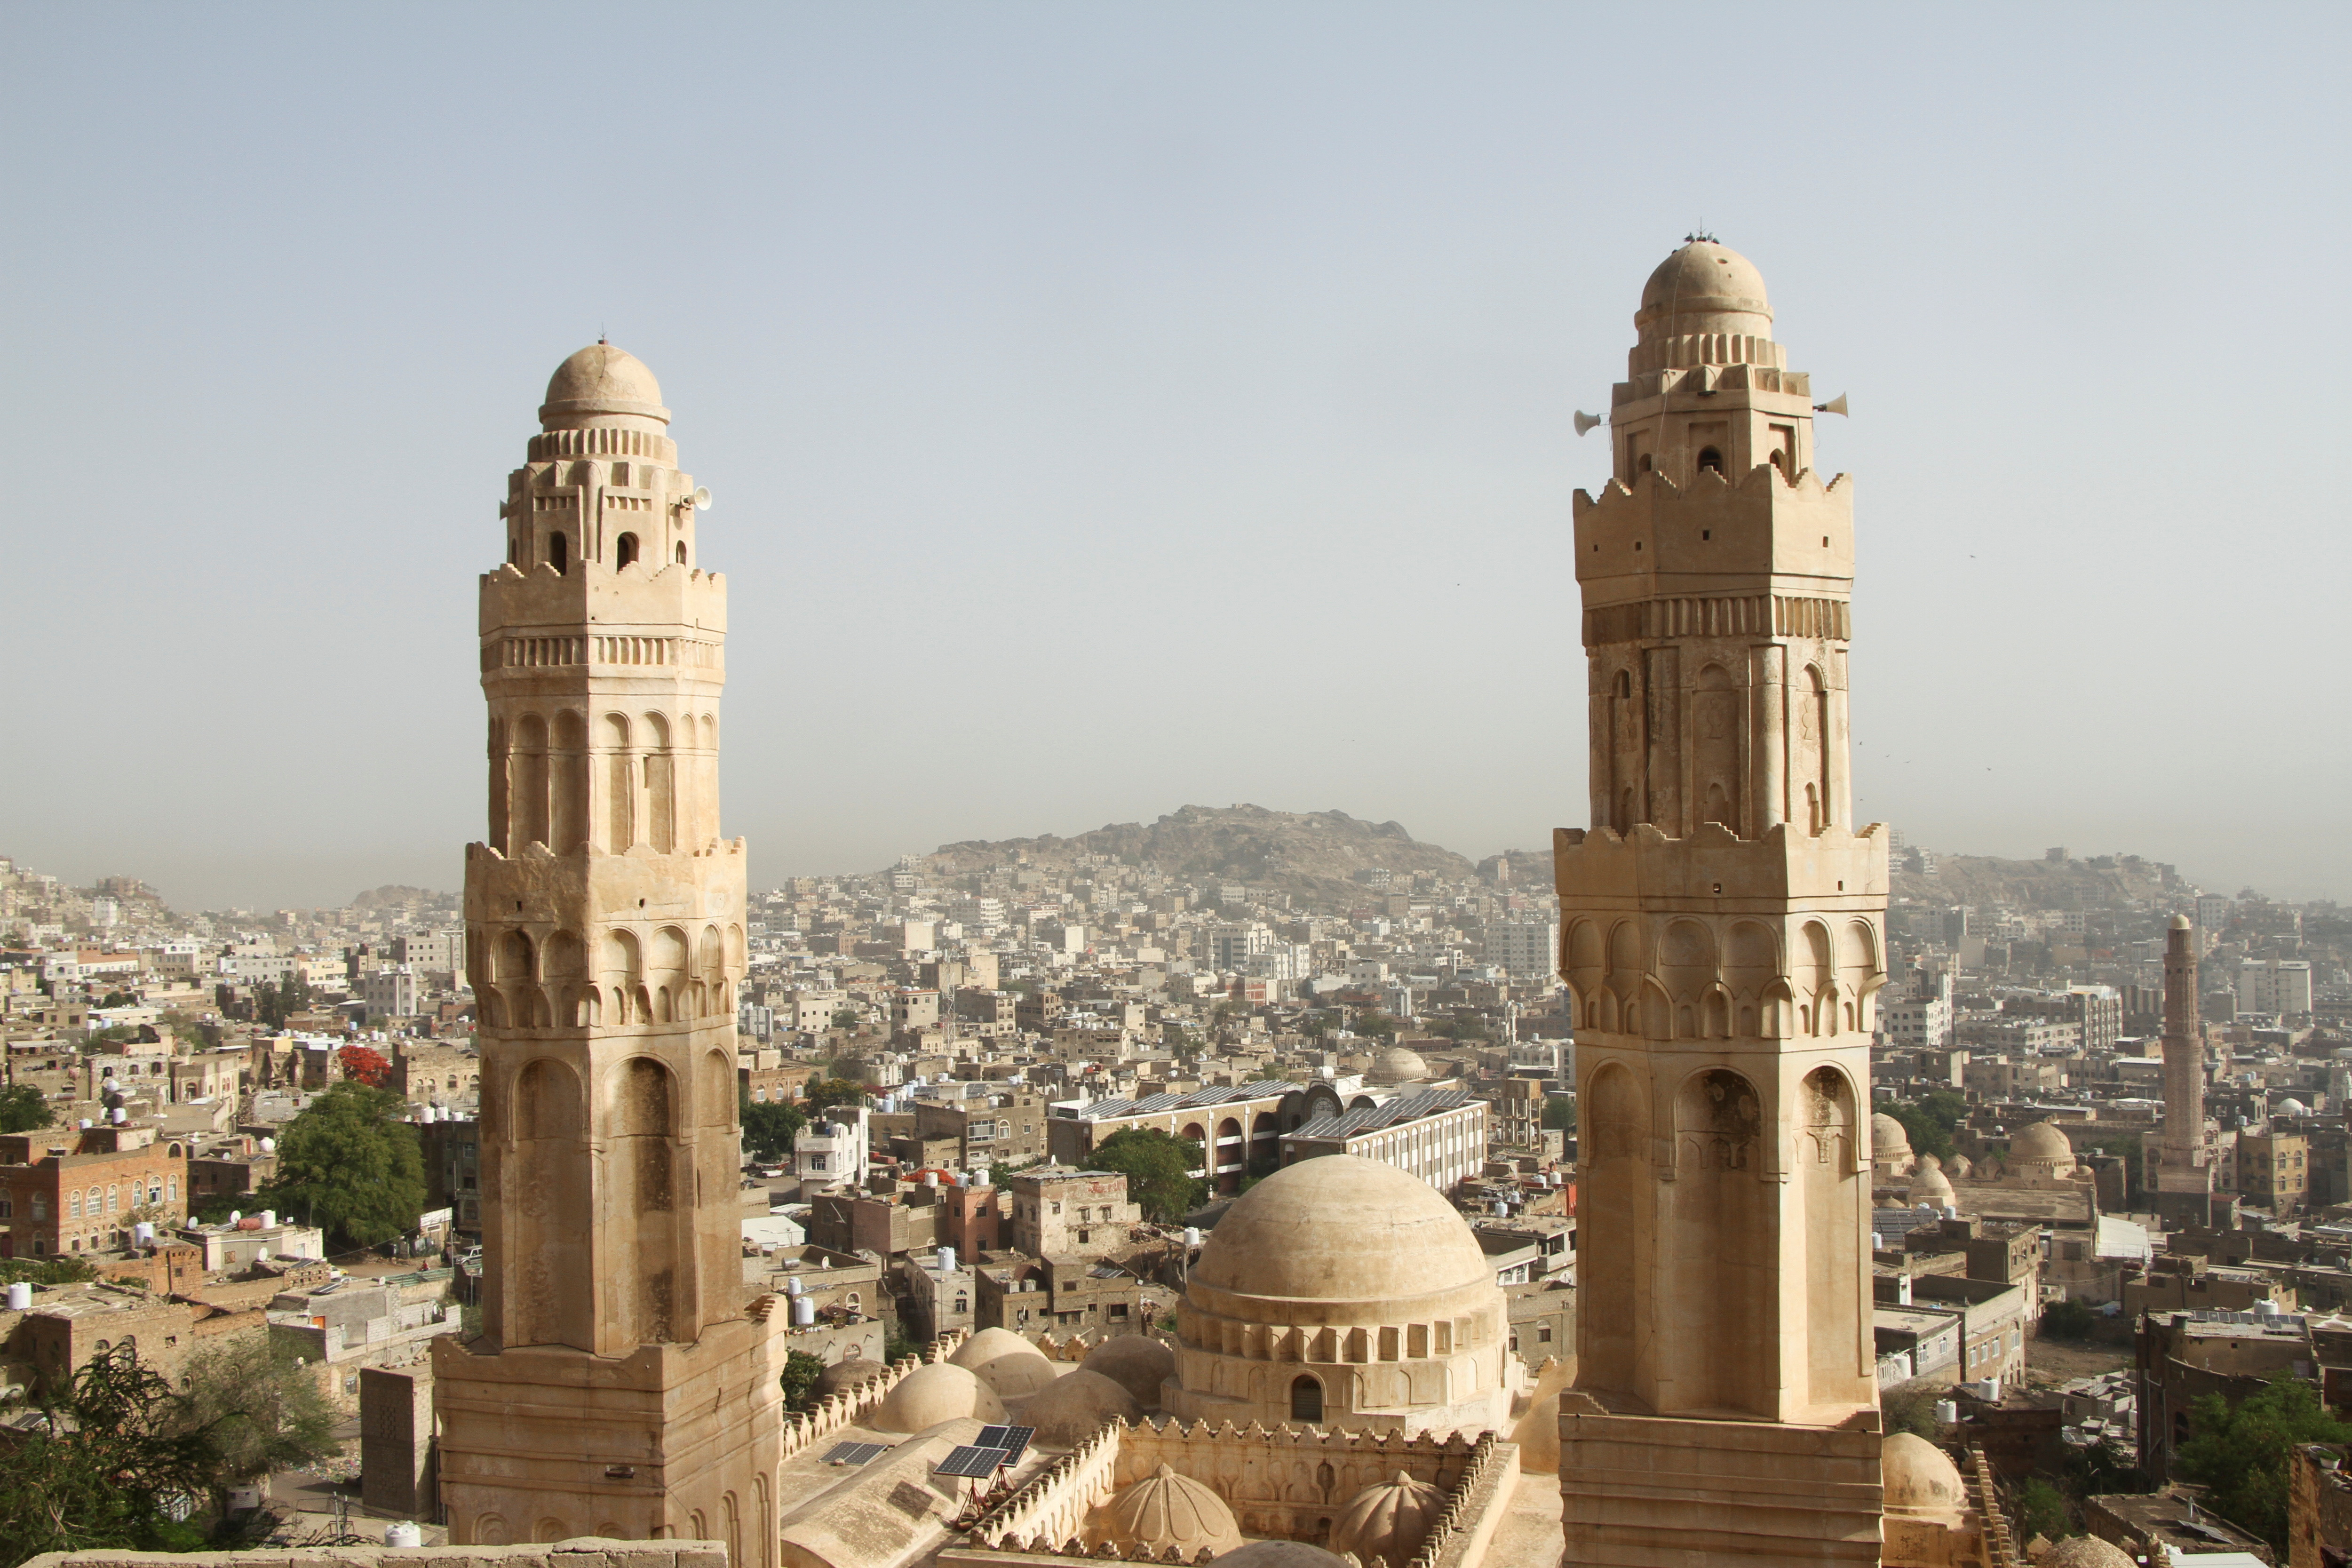 View of the historical Al-Ashrafia Mosque in Taiz